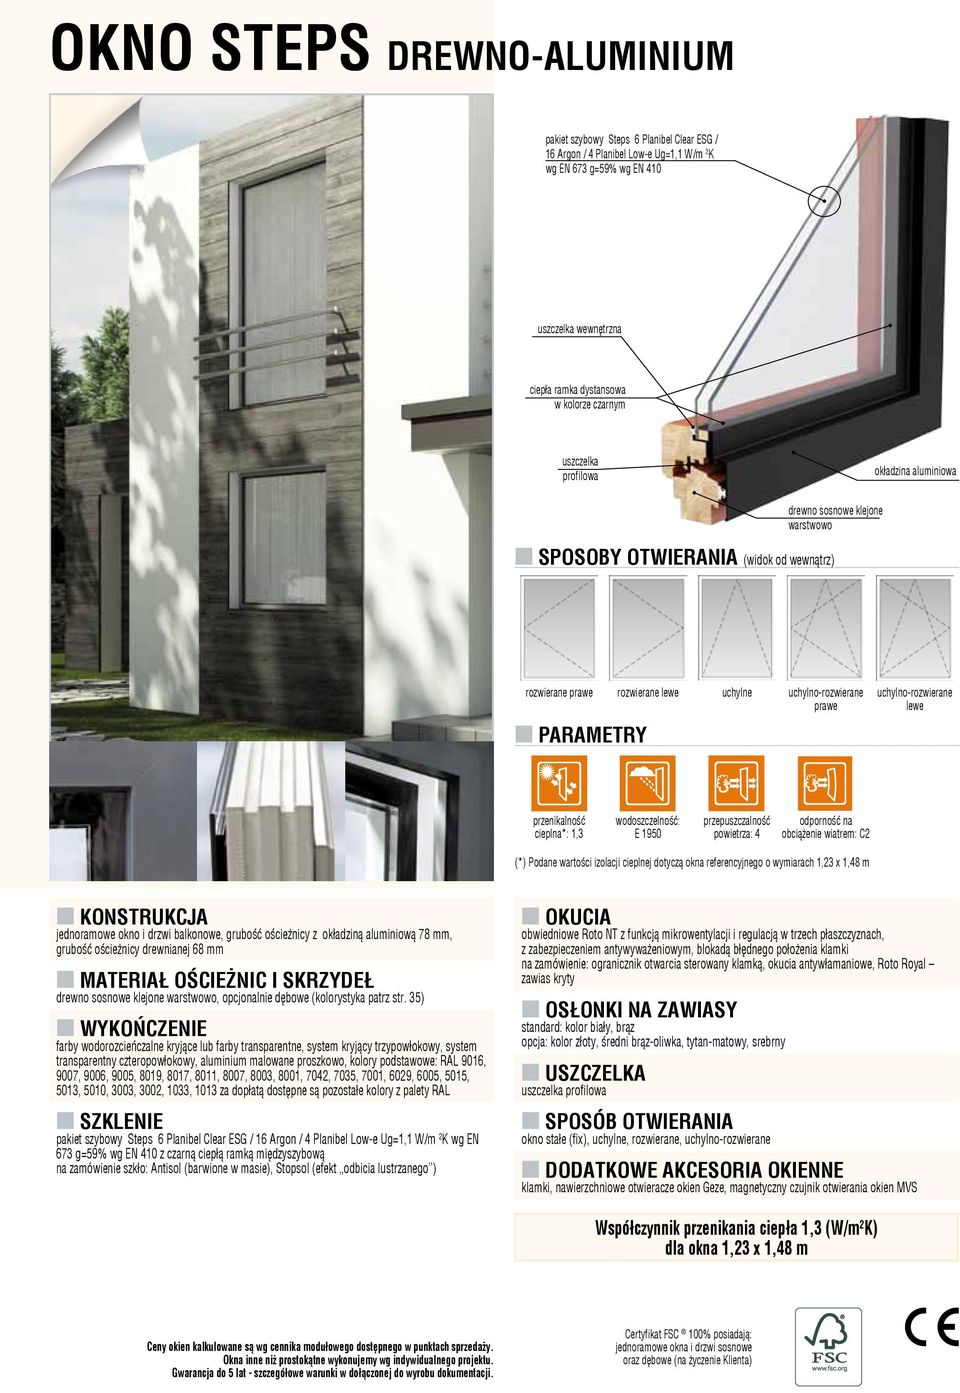 E 1950 obciążenie wiatrem: C2 (*) Podane wartości izolacji cieplnej dotyczą okna referencyjnego o wymiarach 1,23 x 1,48 m jednoramowe okno i drzwi balkonowe, grubość ościeżnicy z okładziną aluminiową